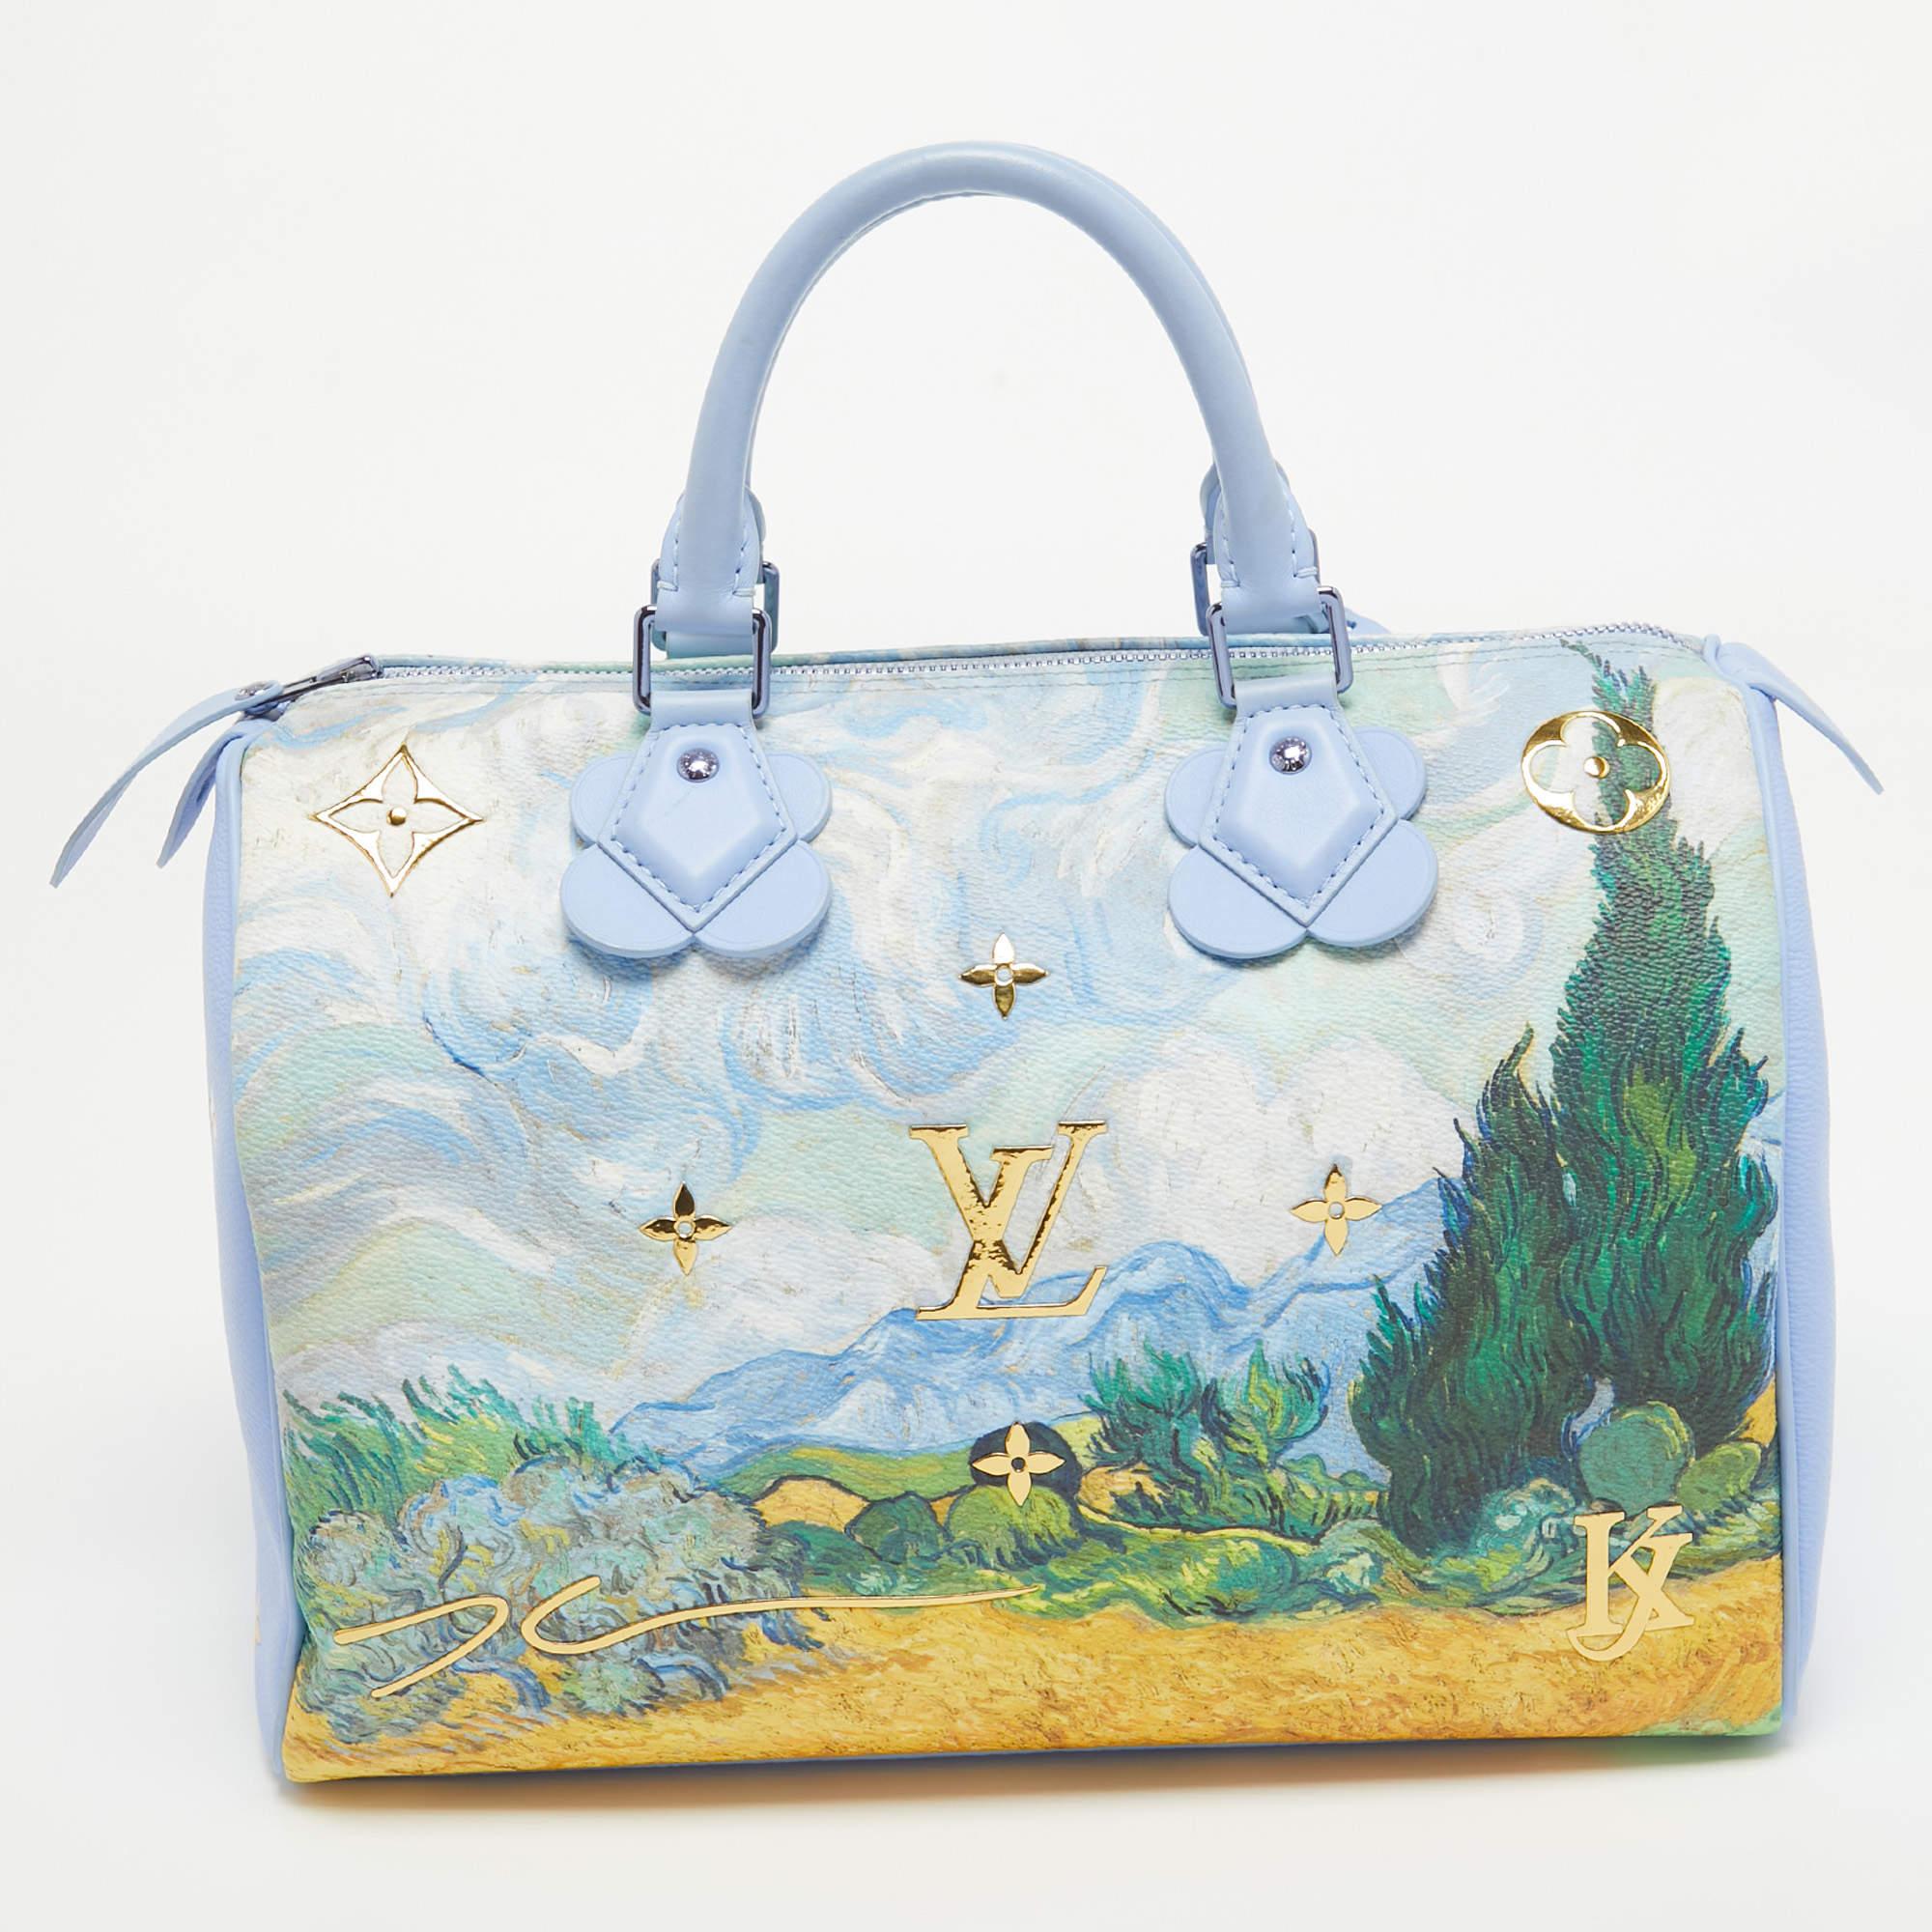 Die Louis Vuitton Masters Van Gogh Speedy 30 Bag ist ein Meisterwerk der Handwerkskunst und Kunstfertigkeit. Diese exquisite Handtasche verbindet nahtlos die kultige Speedy-Silhouette von Louis Vuitton mit dem zeitlosen Kunstwerk von Vincent Van